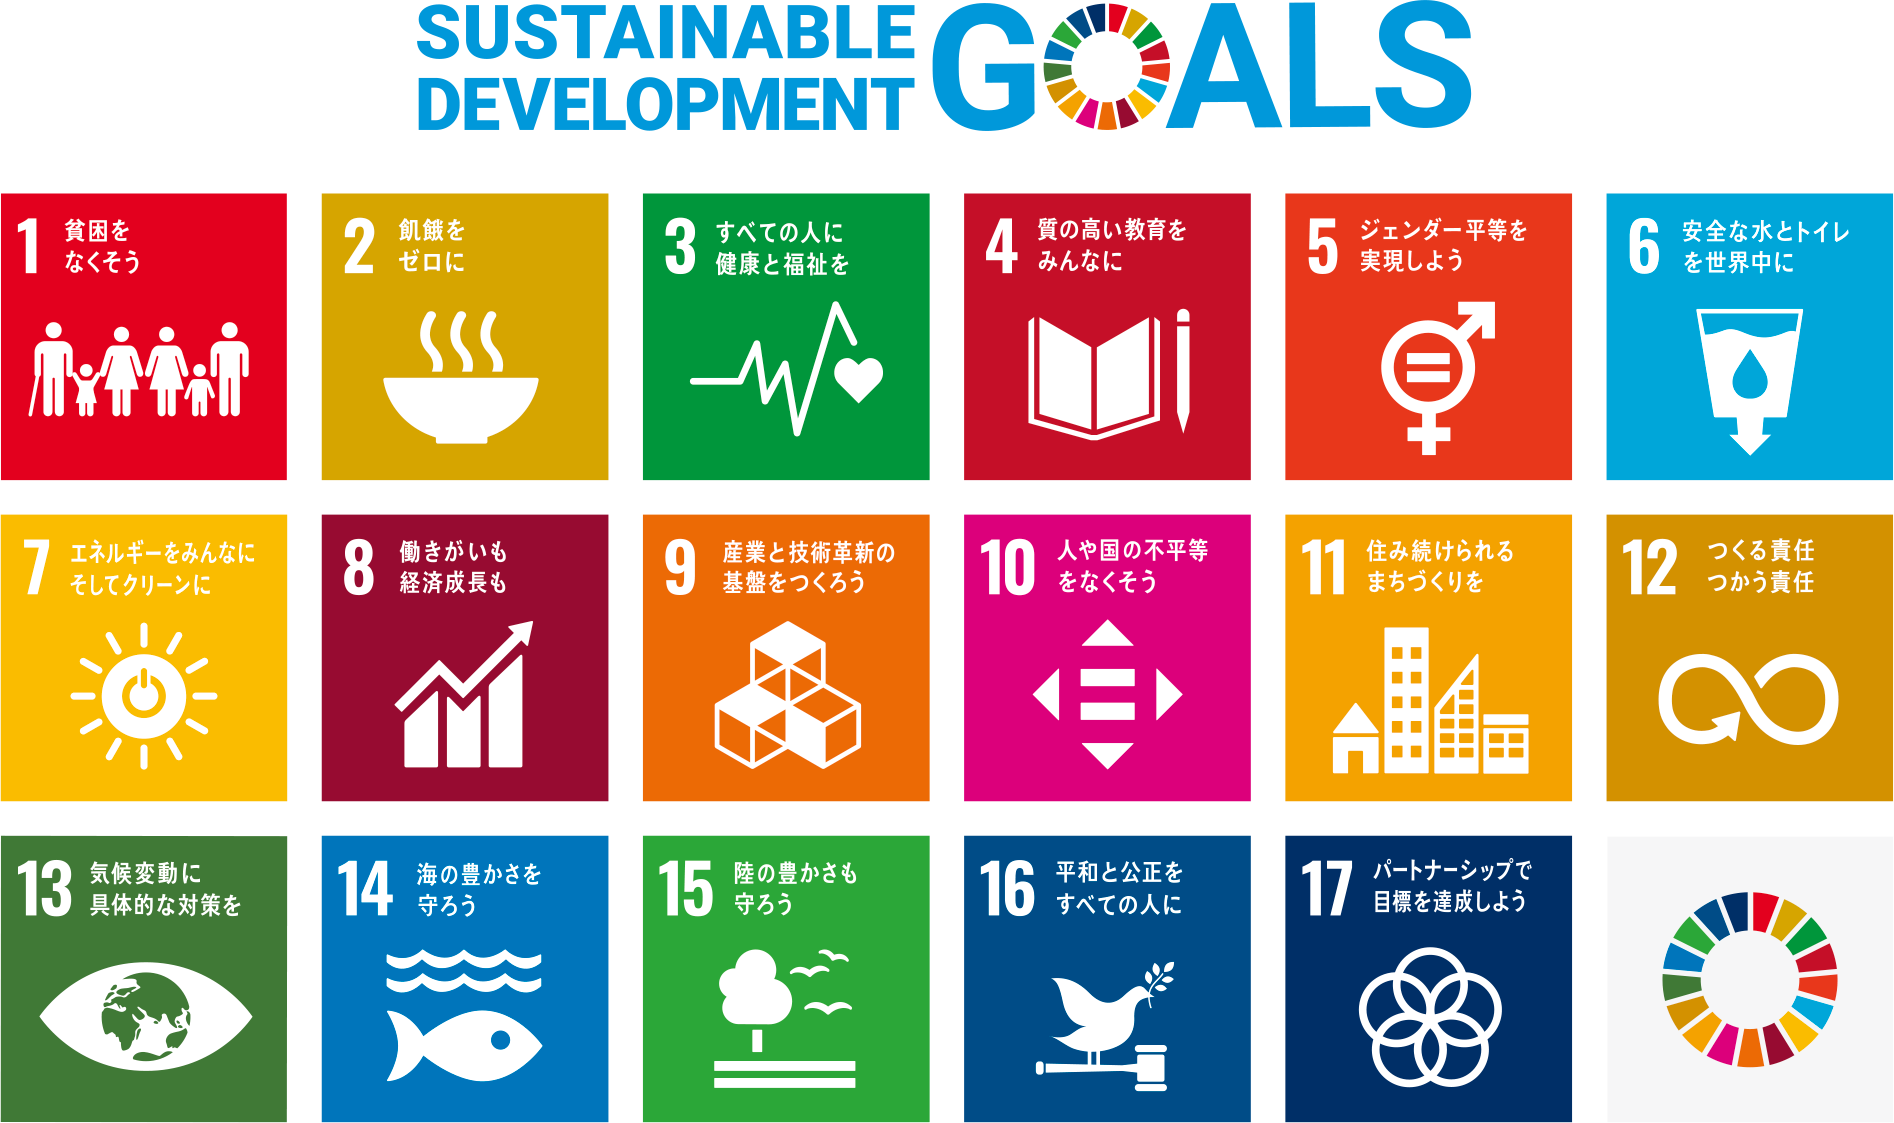 17の目標と169のターゲットからなる「持続可能な開発目標（SDGs）」宣言および目標アイコンイラスト